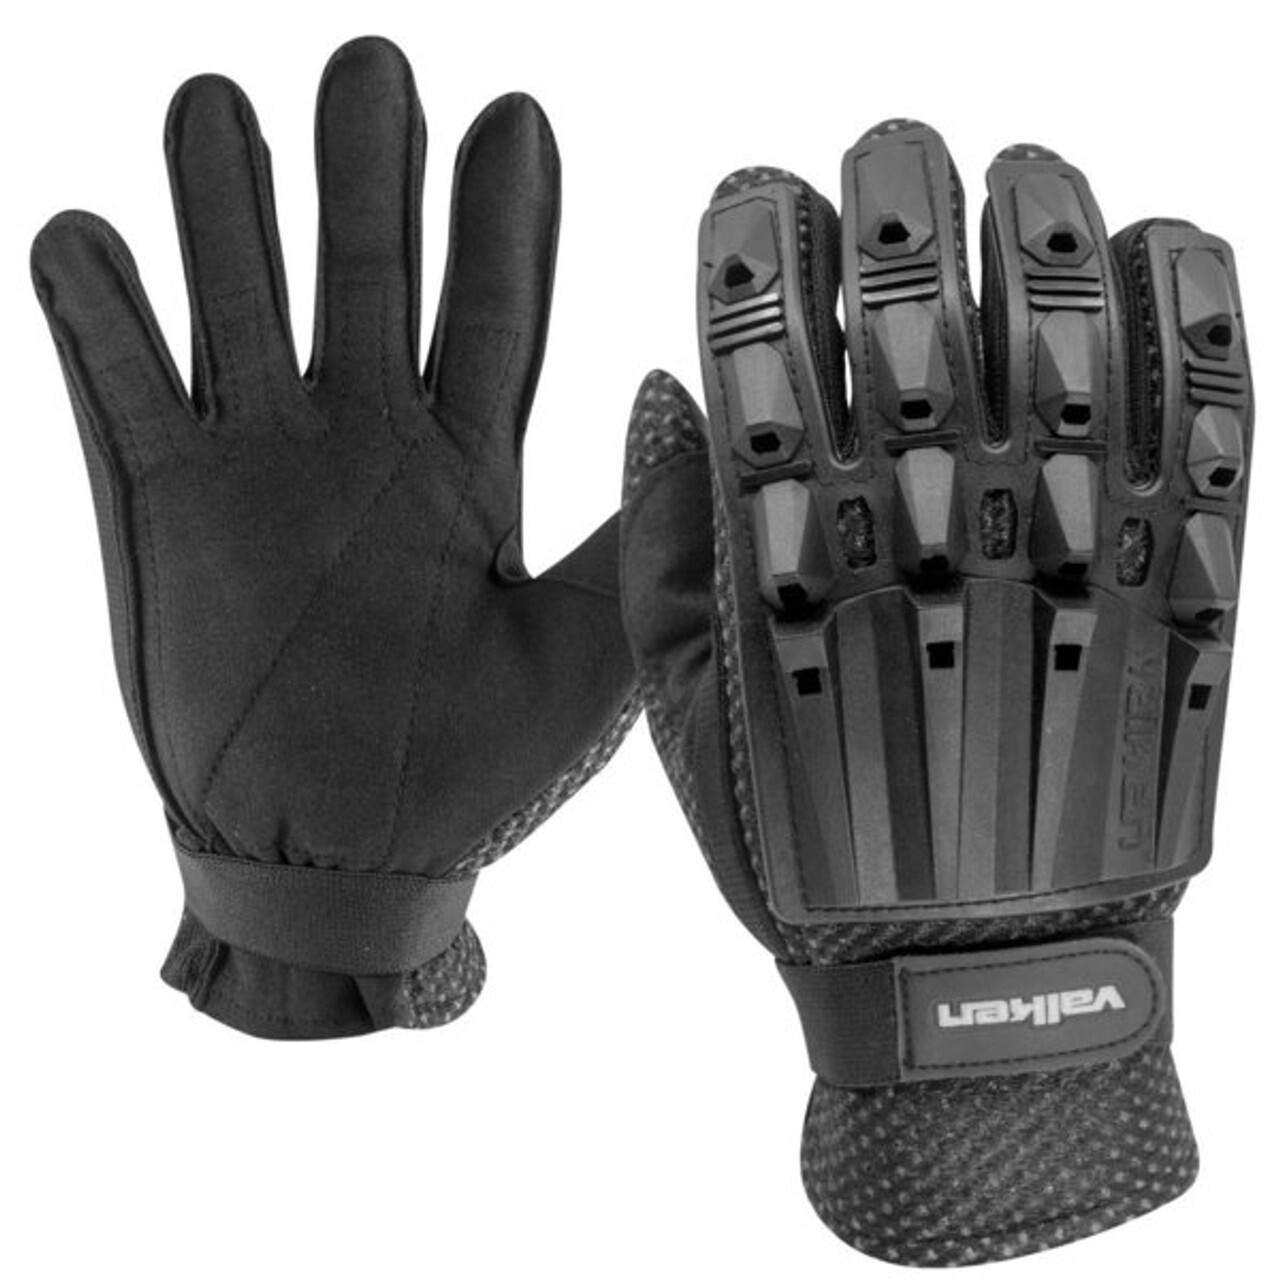 Valken Alpha Full Finger Gloves, Size: Small, Colour: Black